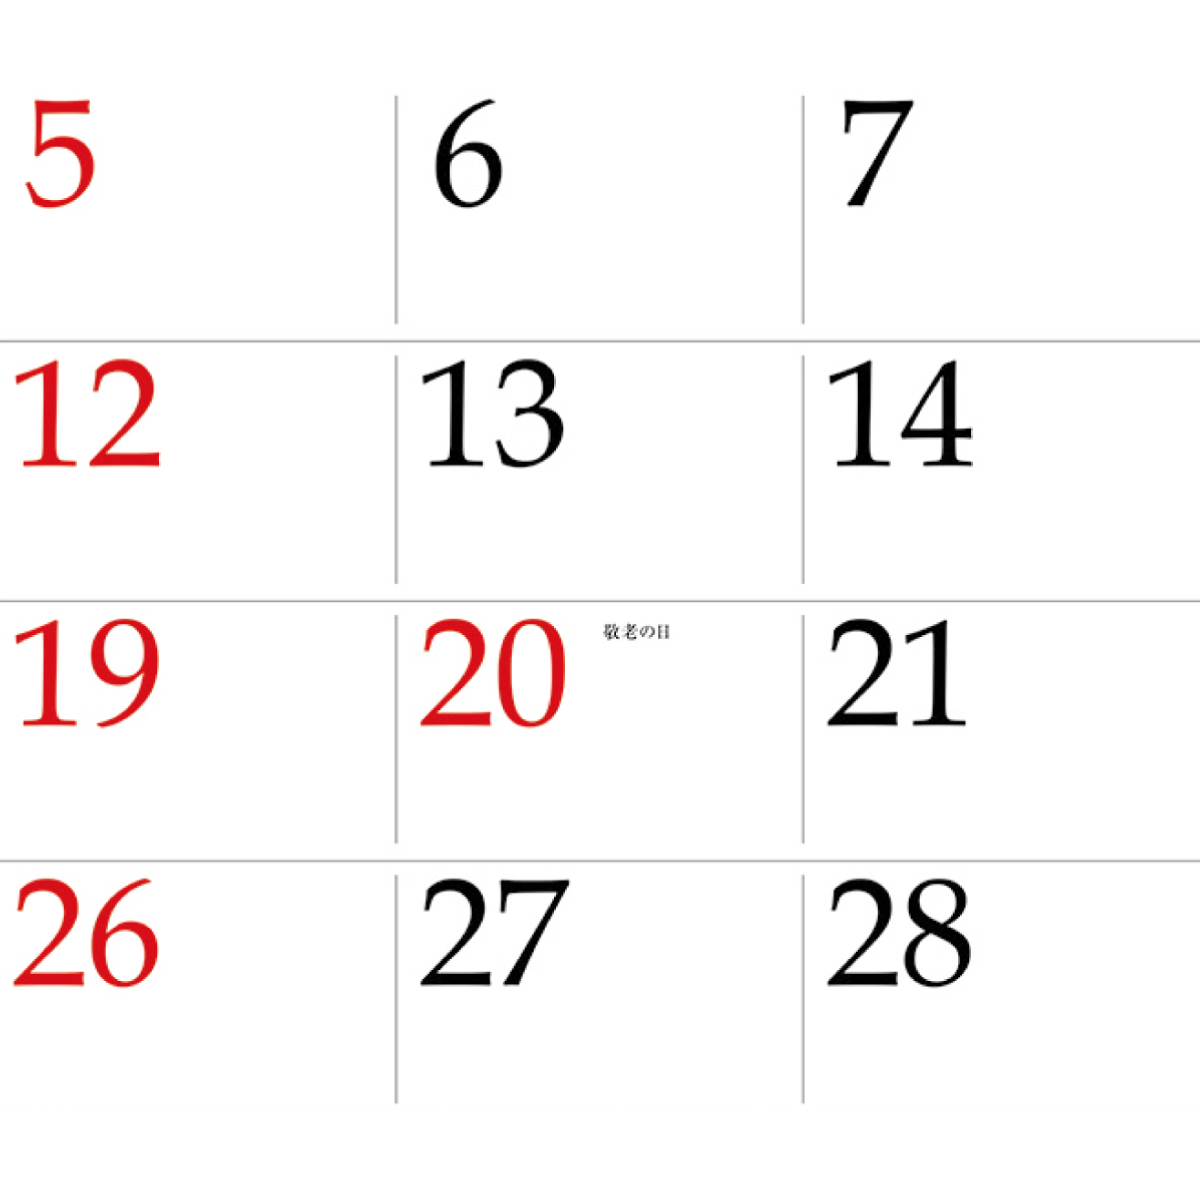 Nk102 リトルエンジェルス キム アンダーソンtm 21年カレンダー 名入れカレンダー製作所 累計35 000社突破